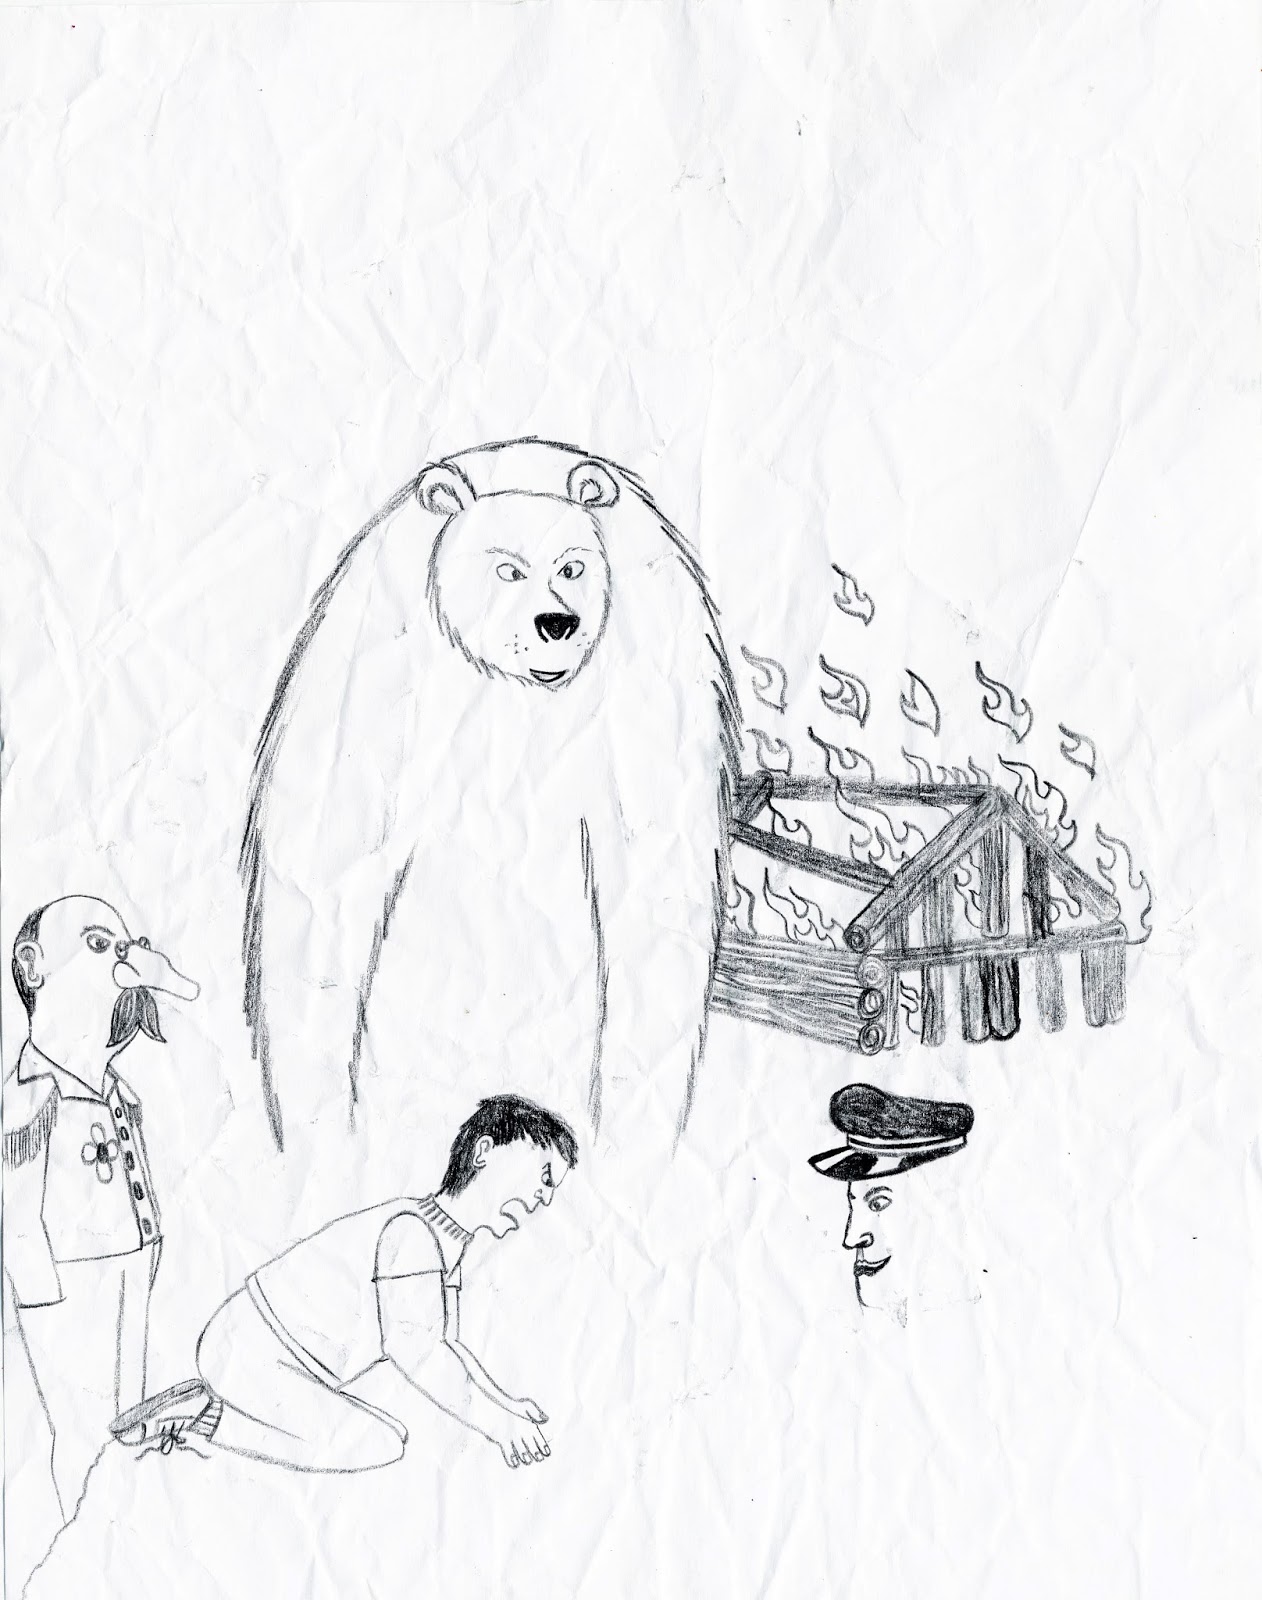 Santiago: Evolution of an artist: Touching Spirit Bear Drawings